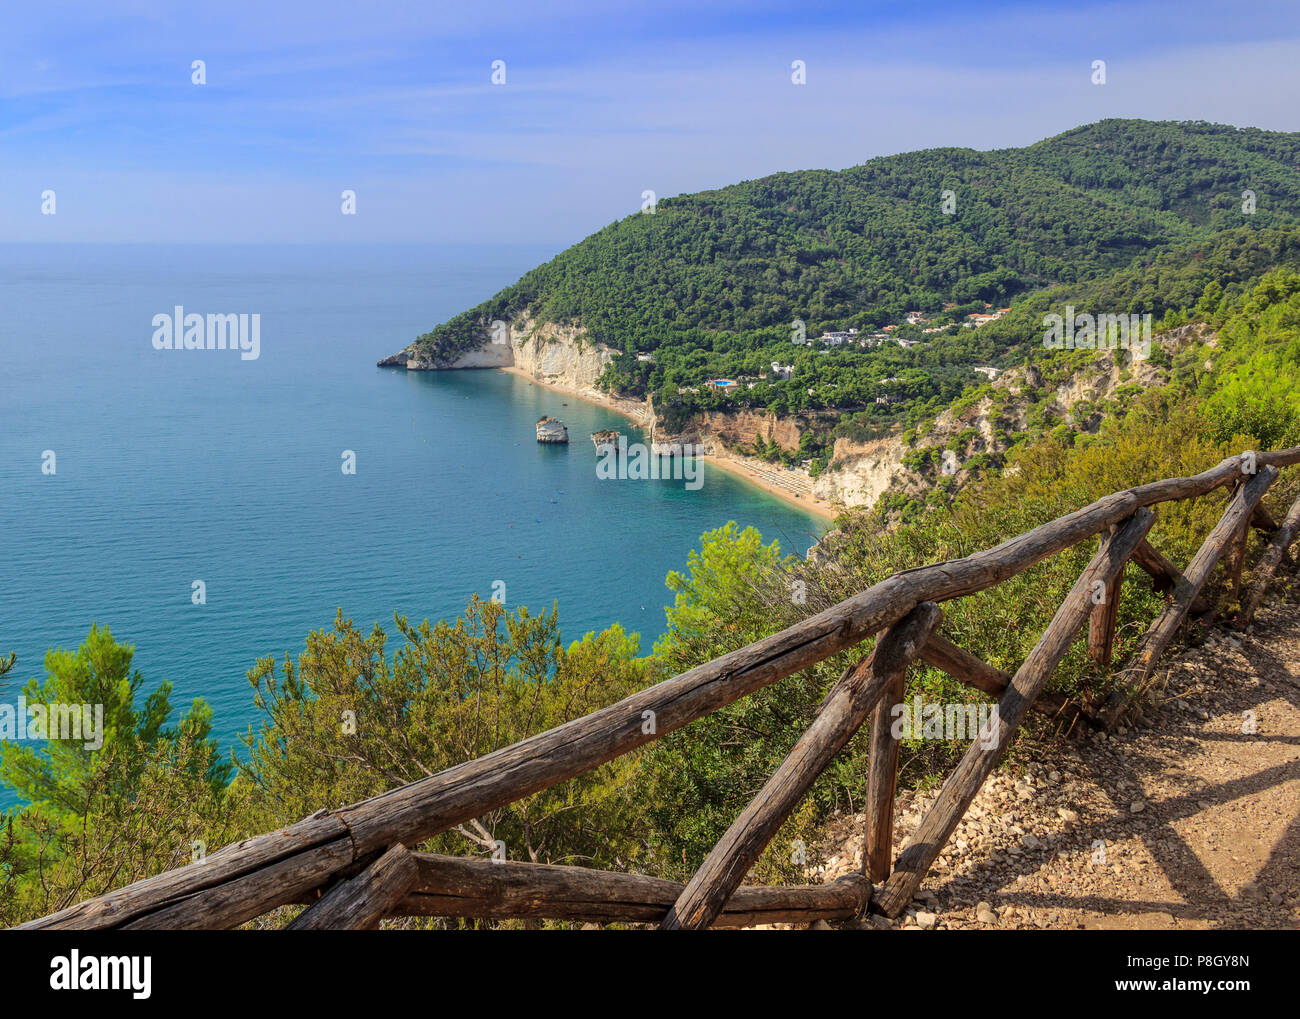 Die schönsten Küsten Italiens: zagare Bay (Apulien). Die Strände bieten eine atemberaubende Aussicht mit brigthly Weiß karstigen Felsen, smaragd-blauen Meer. Stockfoto